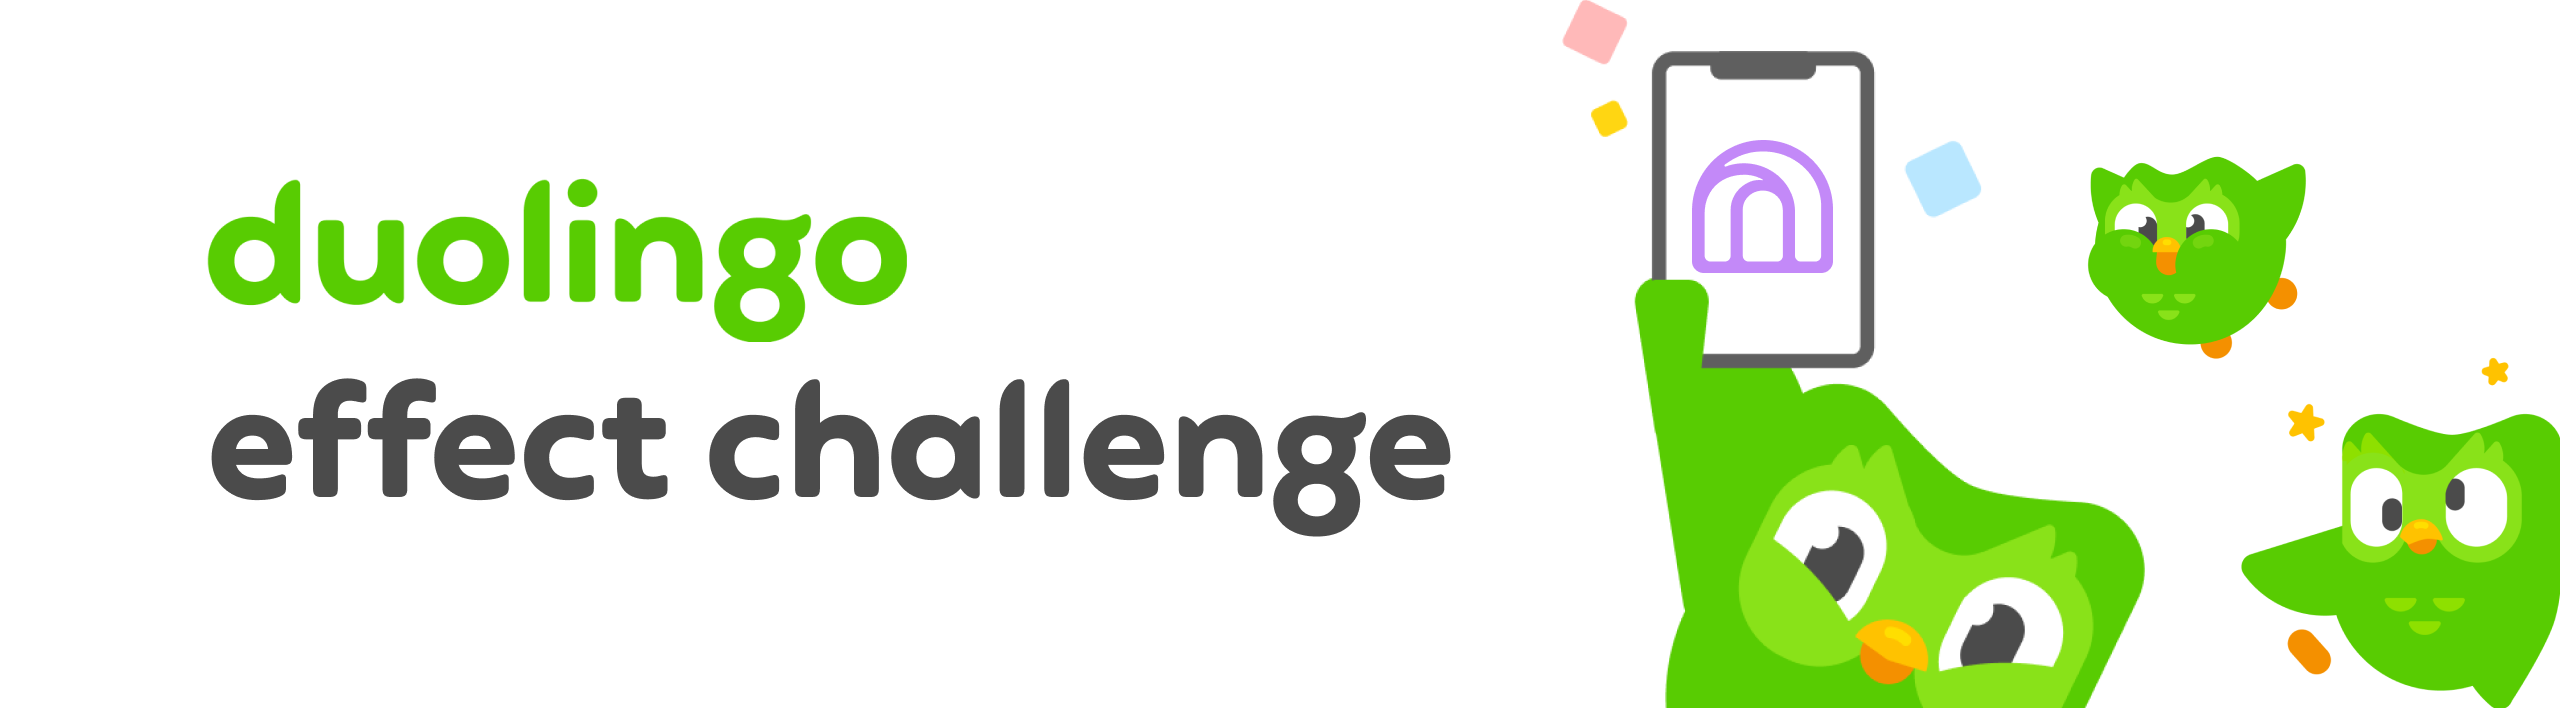 duolingo-challenge